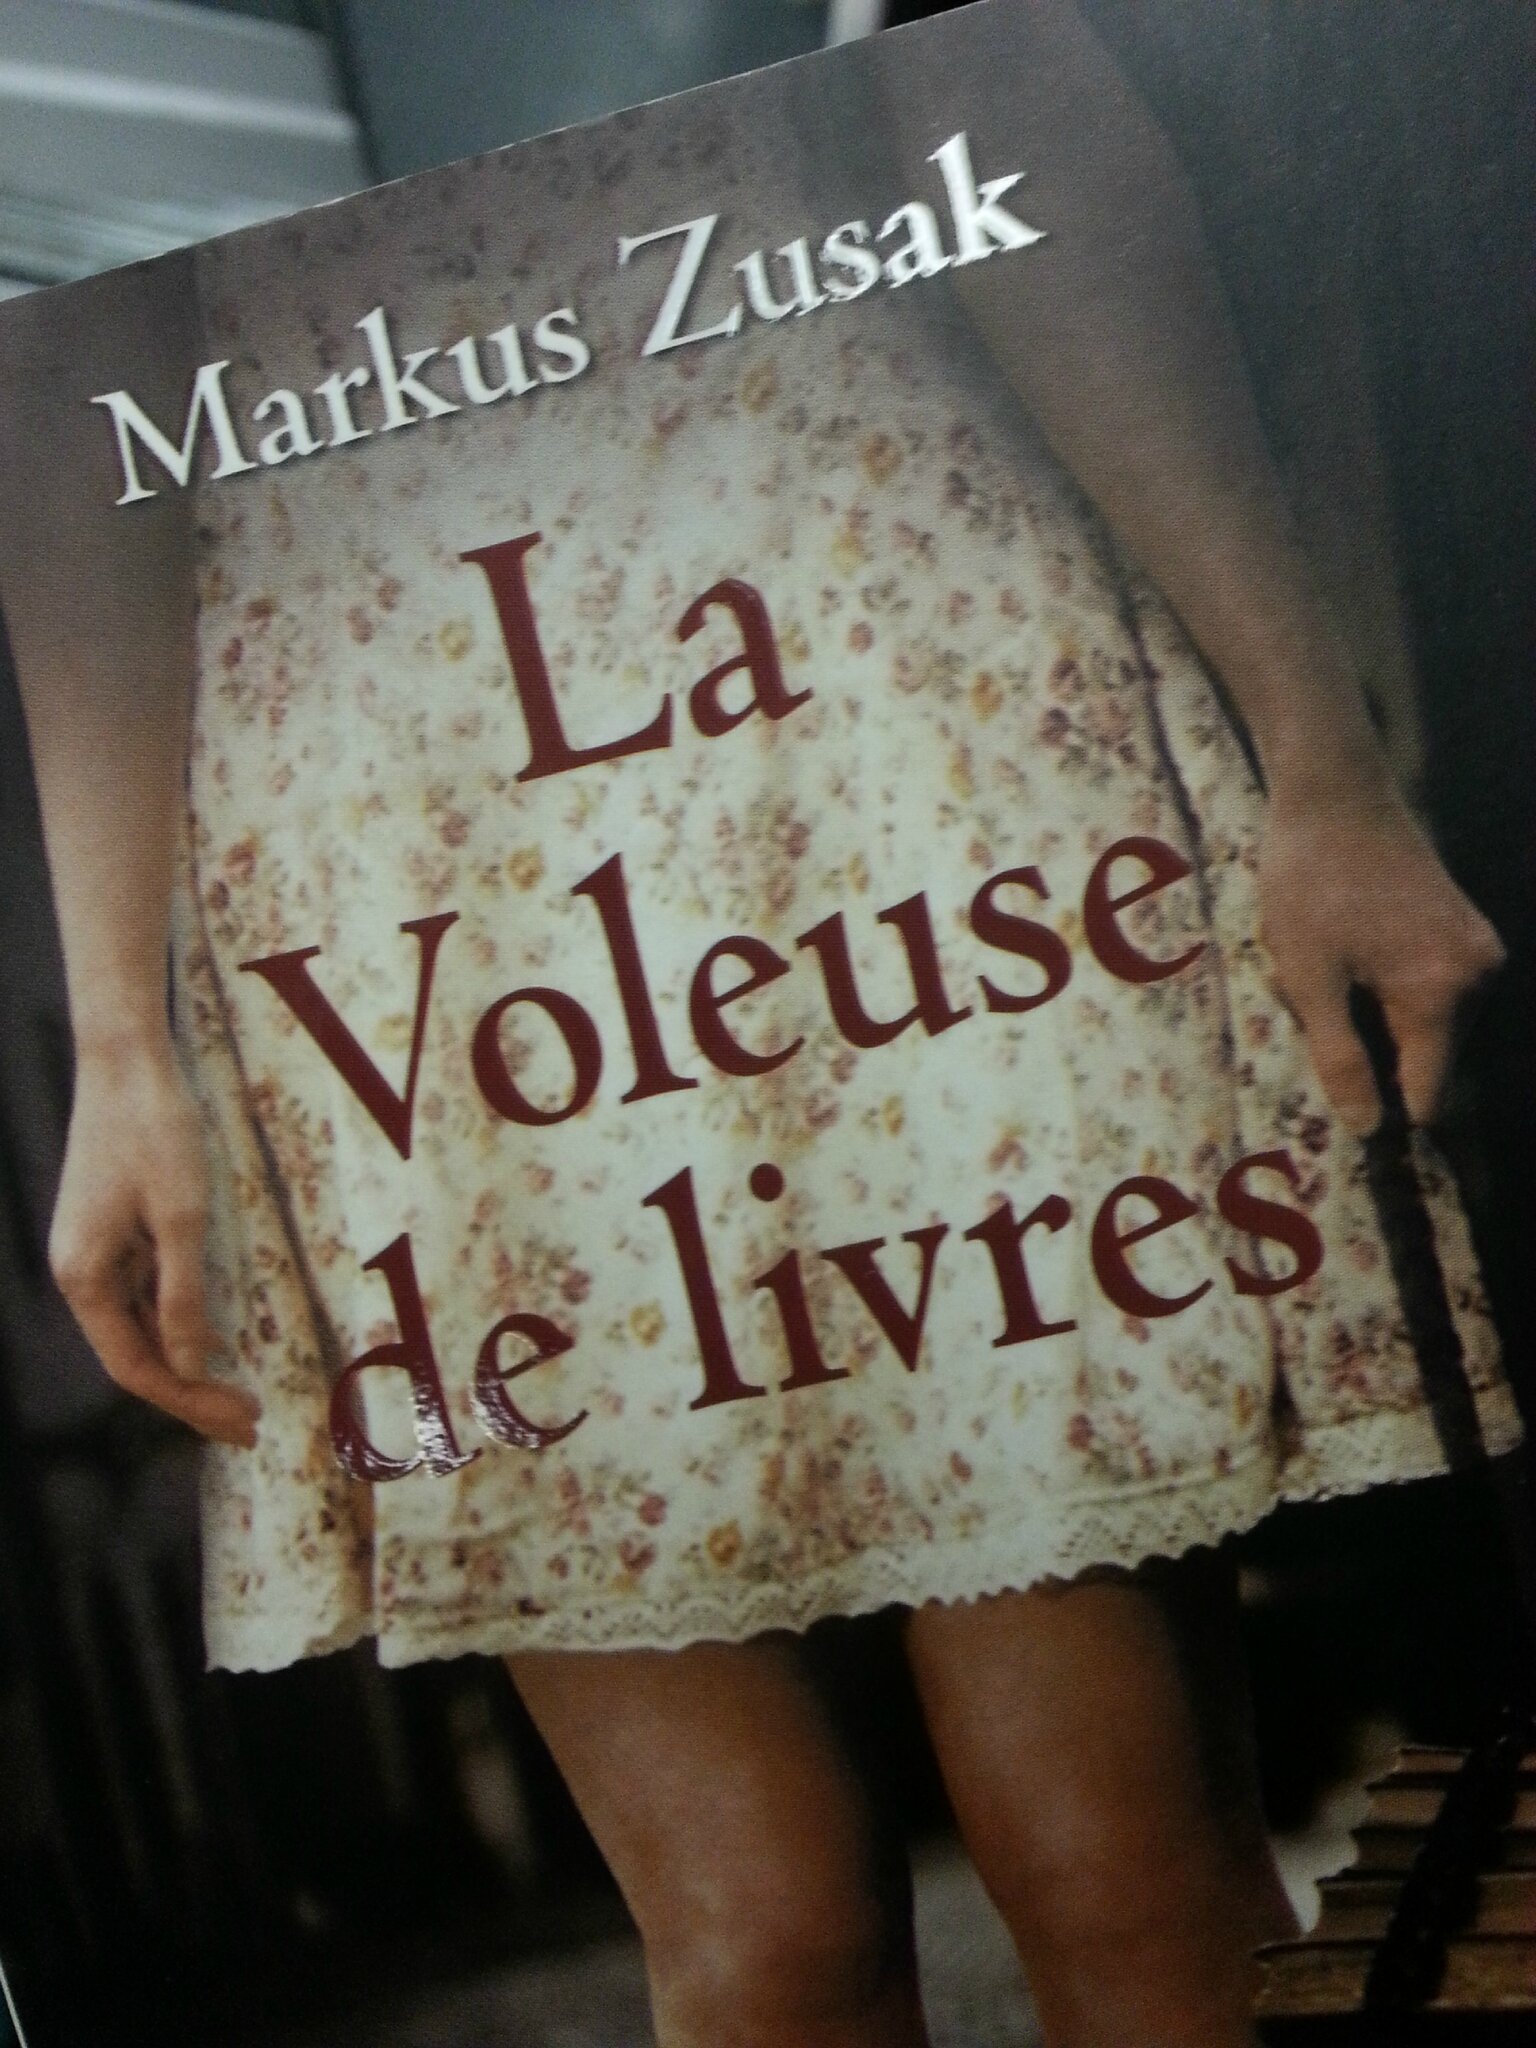 La voleuse de livres, Markus Zusak – Valmyvoyou lit